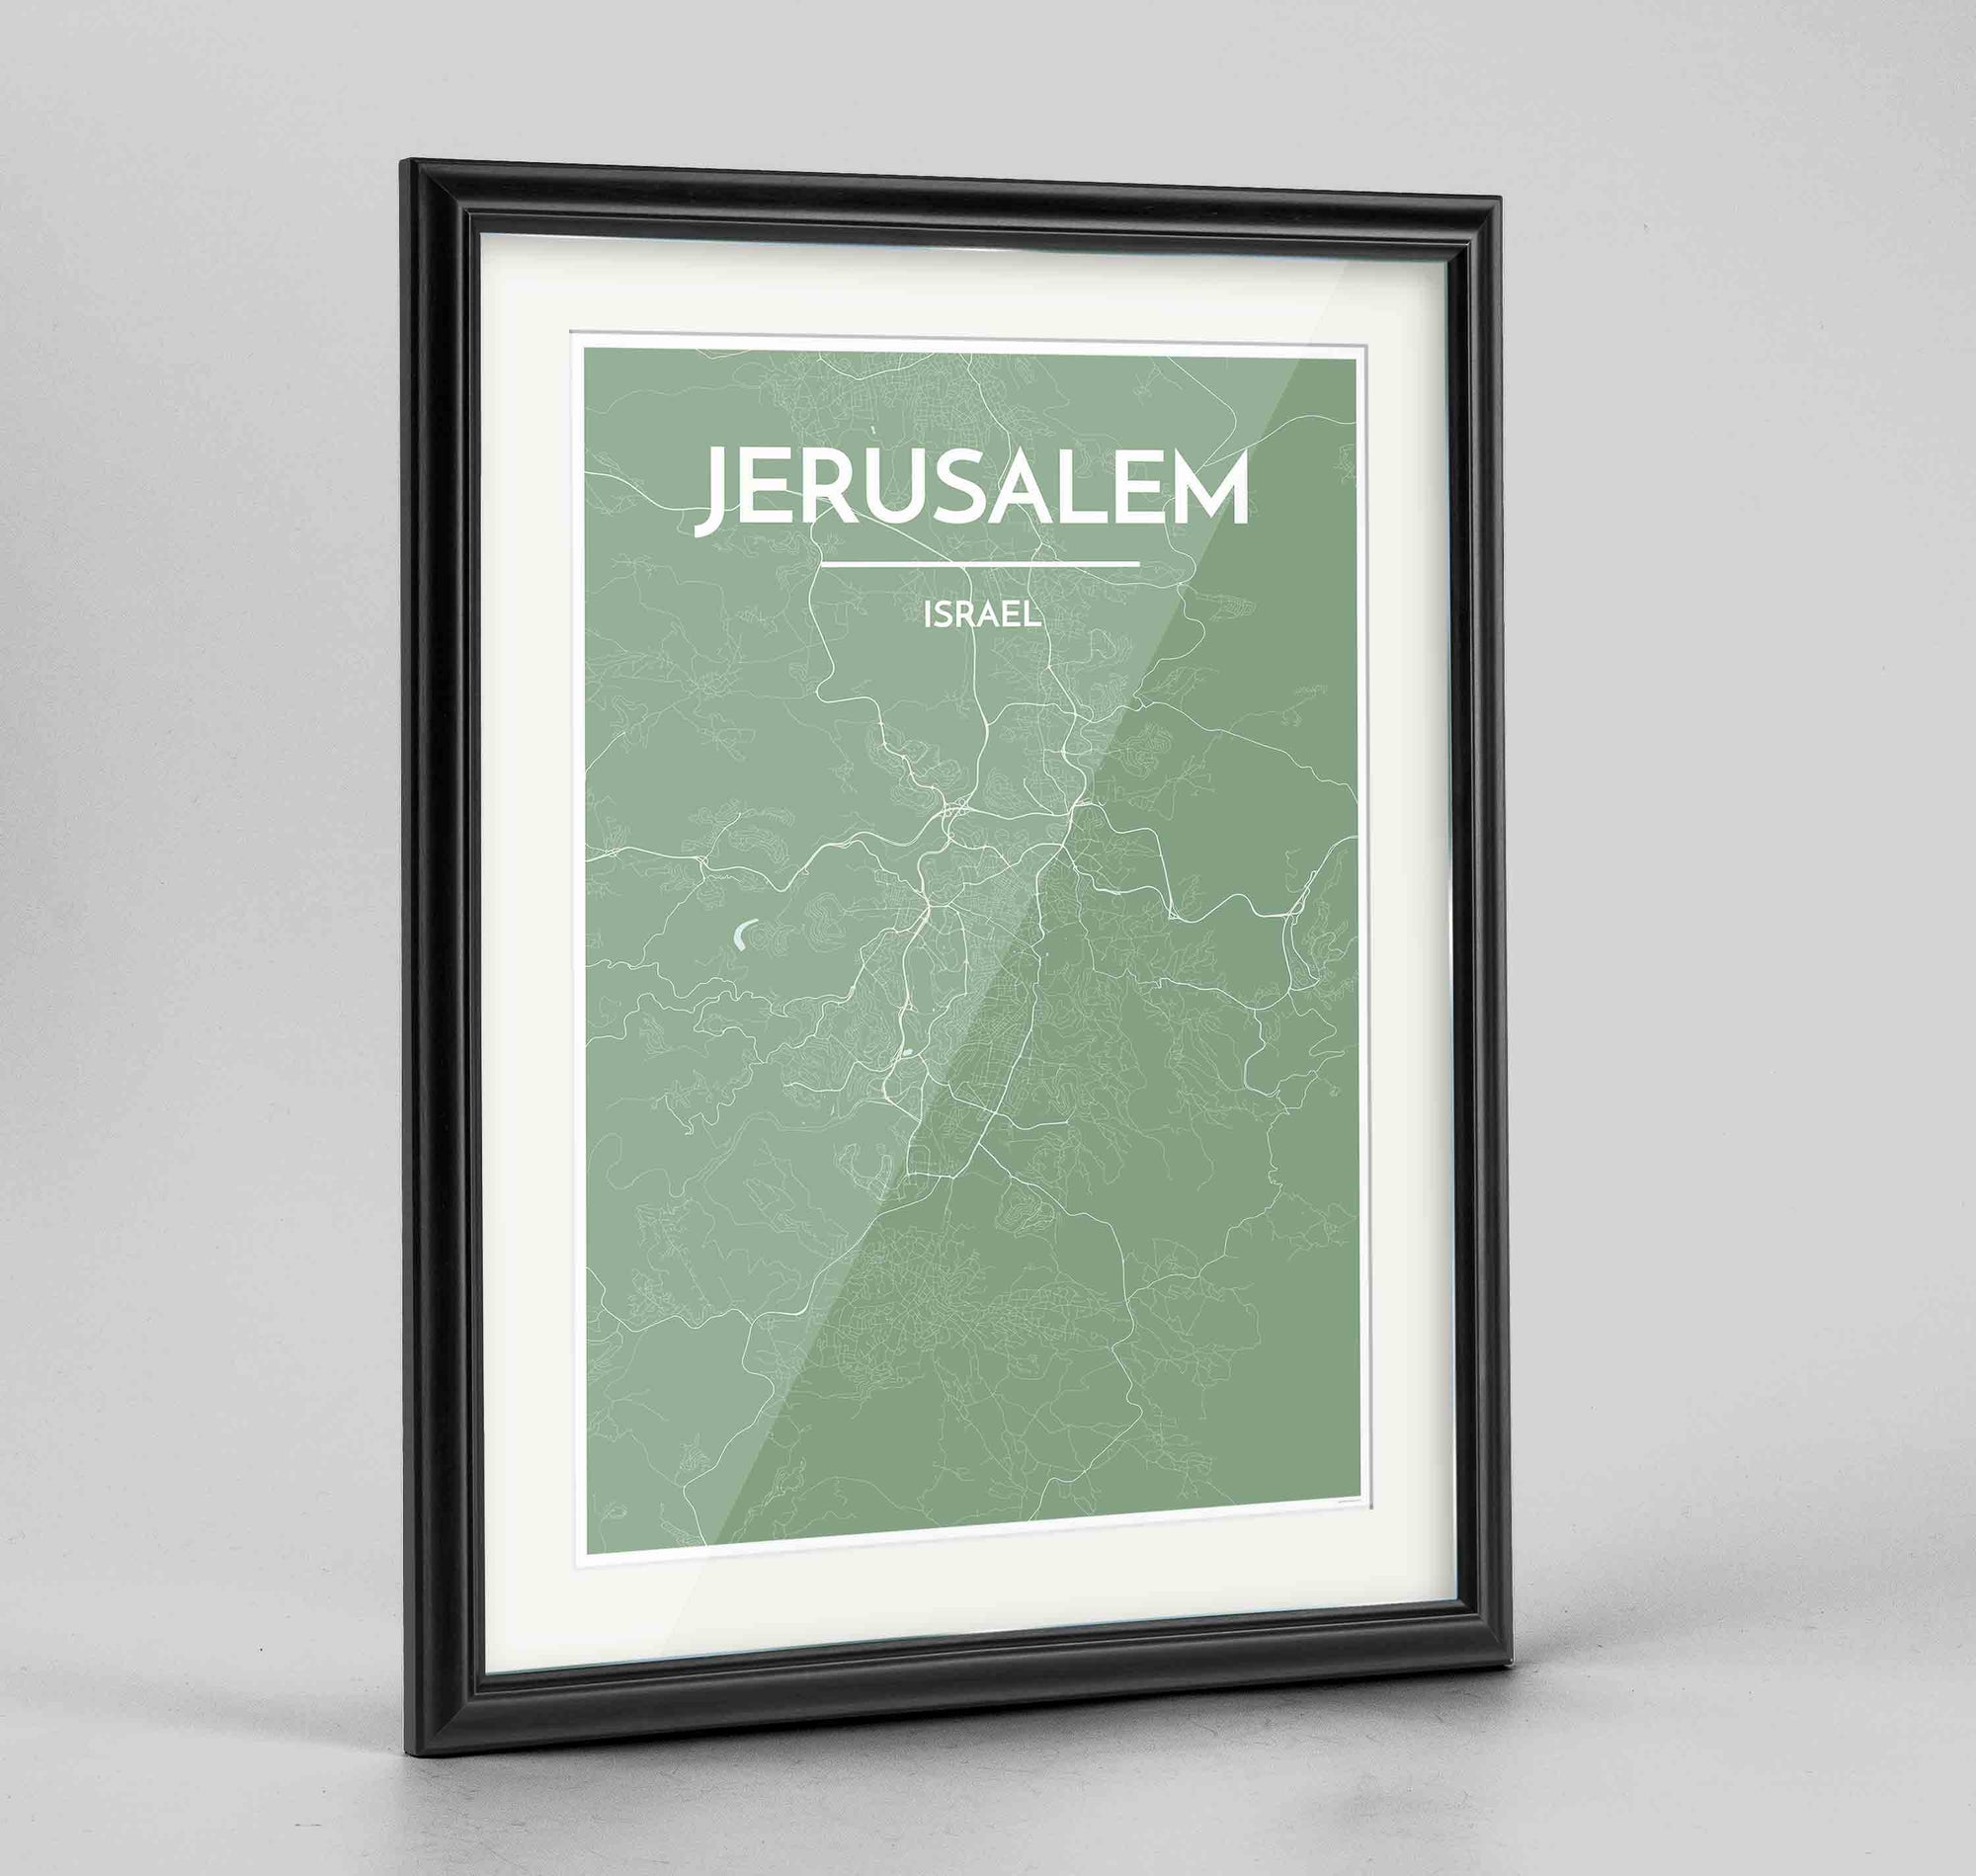 Framed Jerusalem Map Art Print 24x36" Traditional Black frame Point Two Design Group